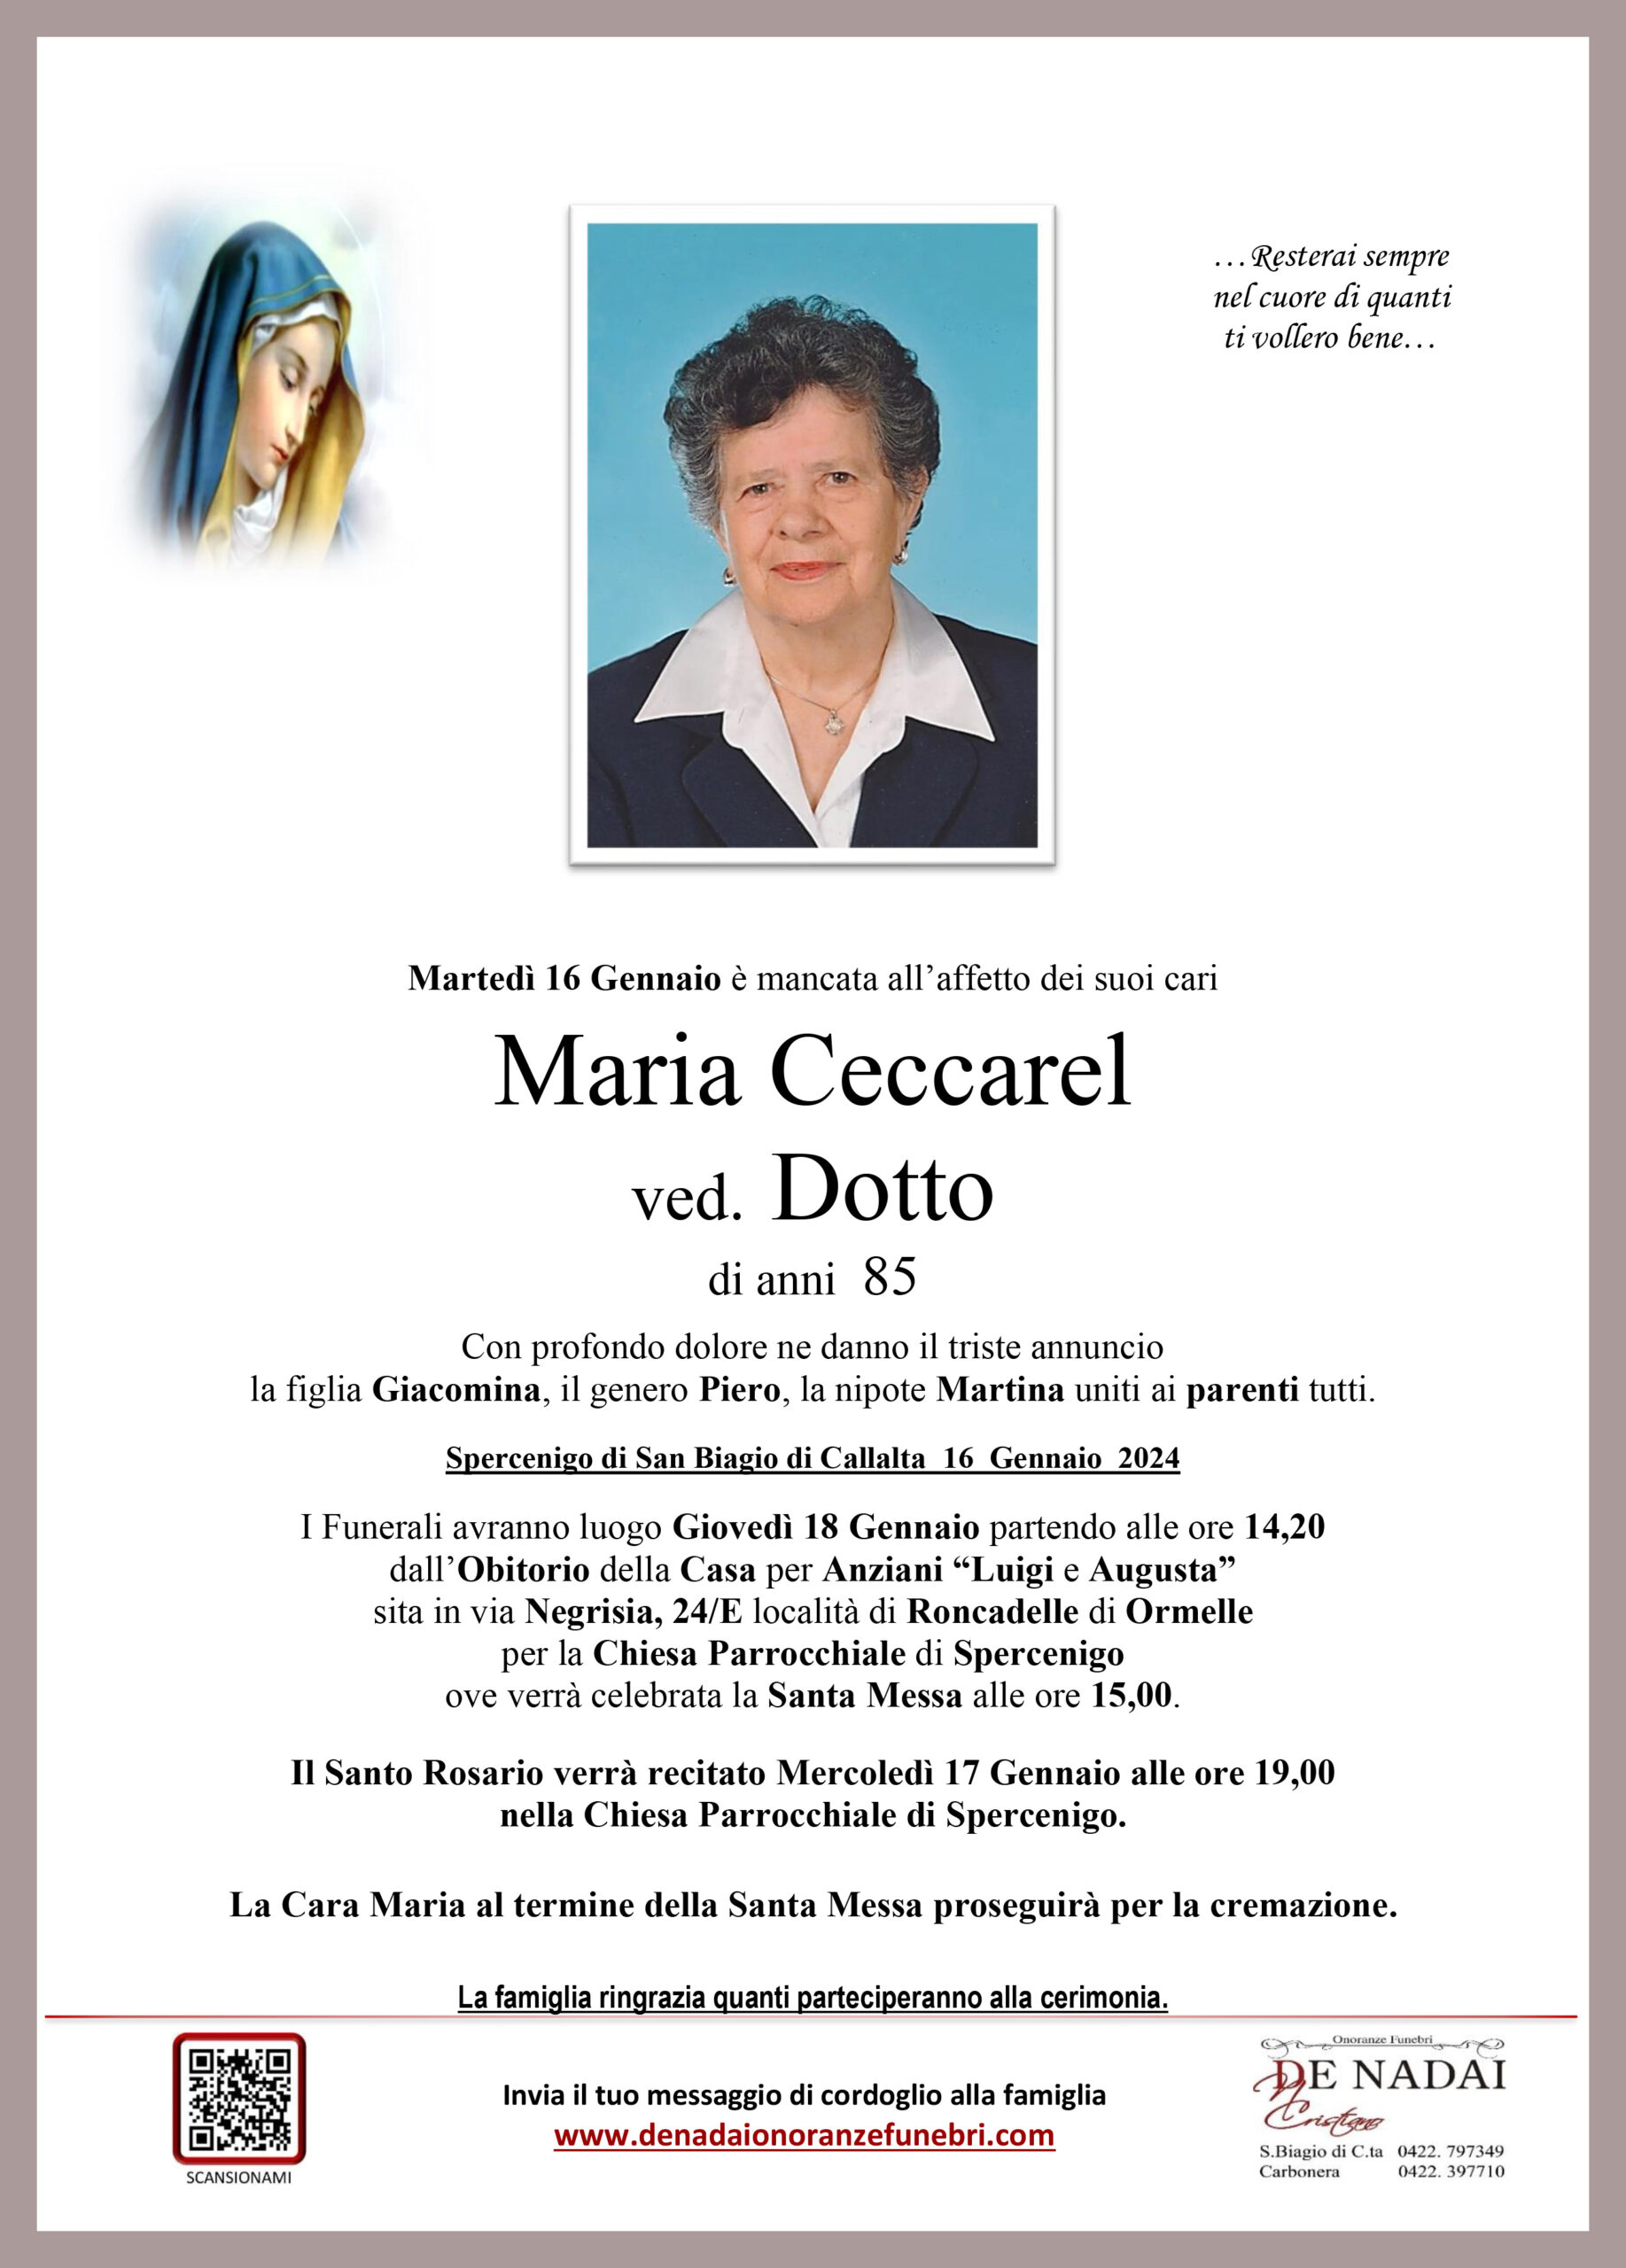 Ceccarel Maria